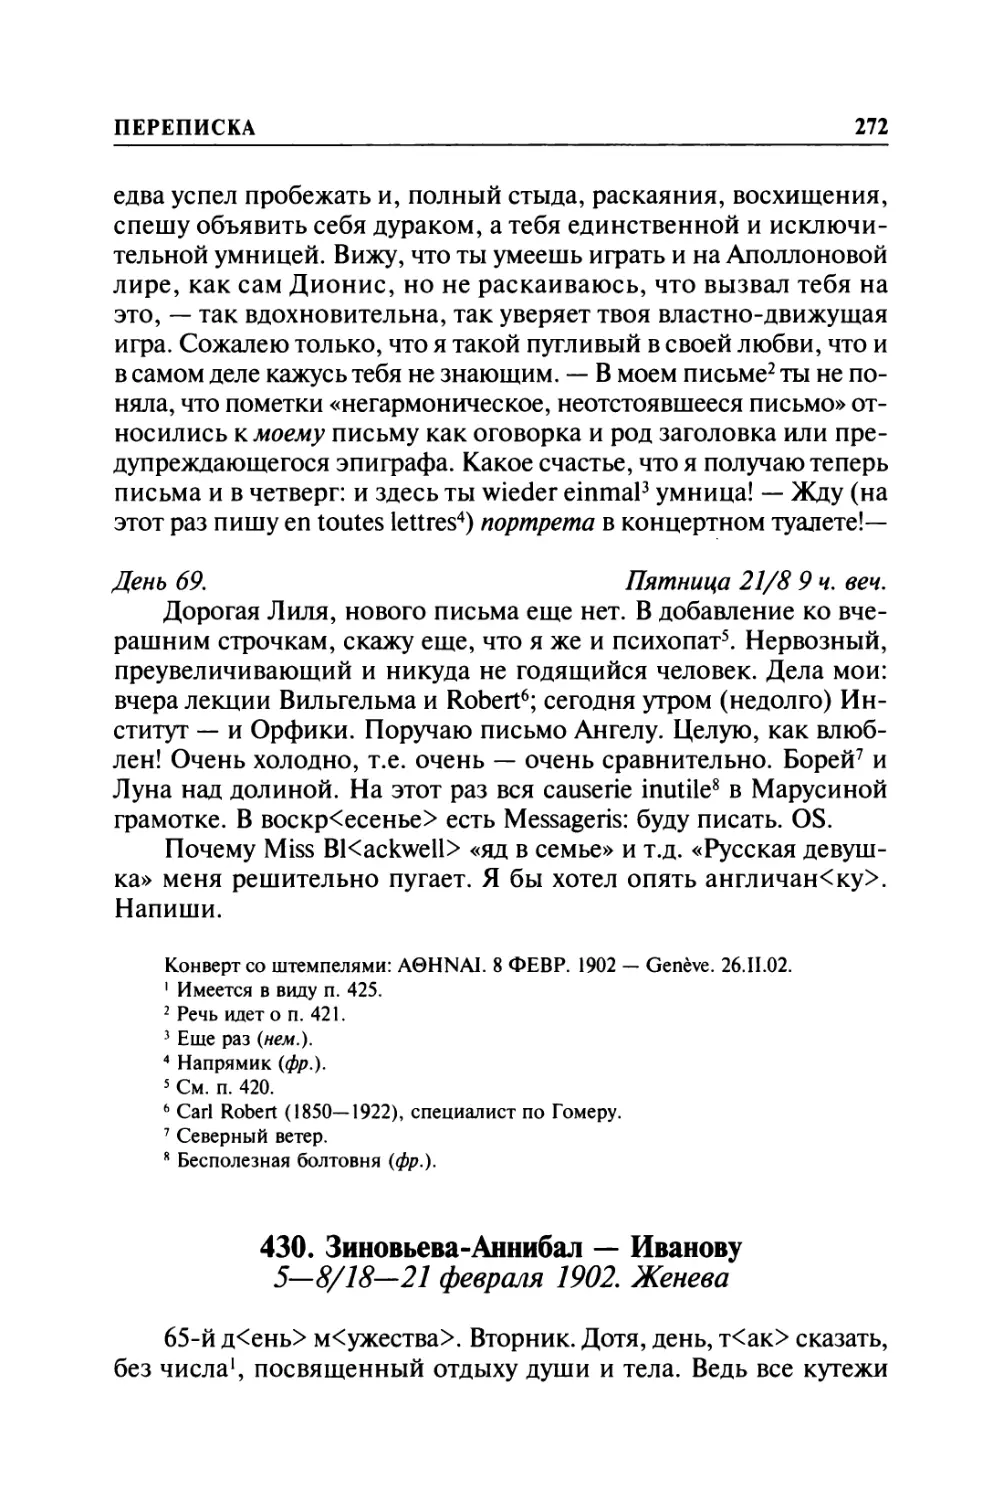 430. Зиновьева-Аннибал — Иванову. 5—8/ 18—21 февраля 1902. Женева